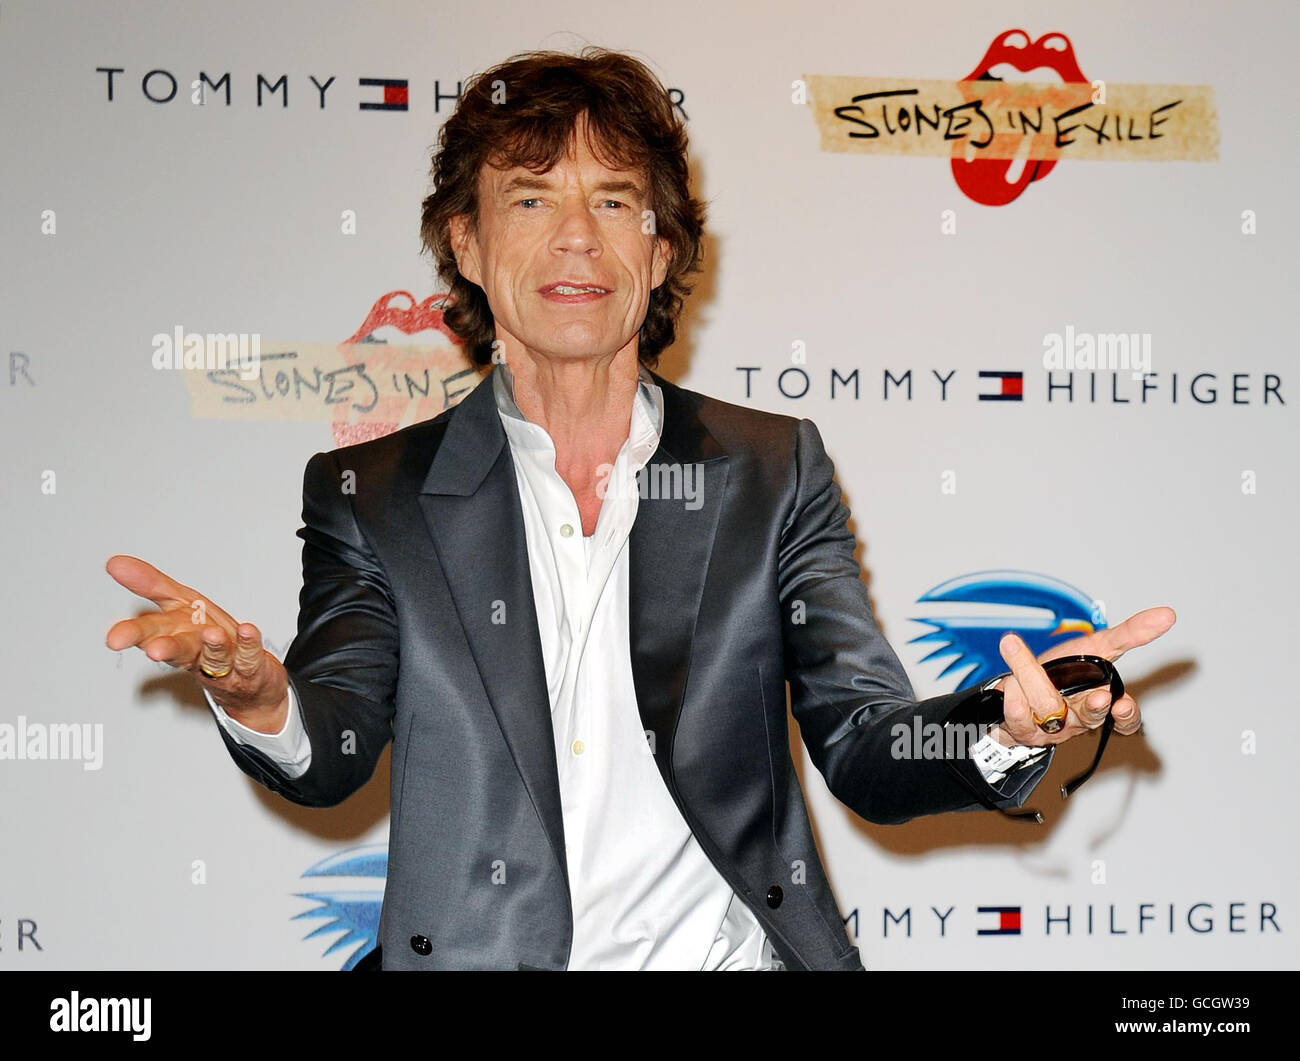 Sir Mick Jagger nimmt an einer Fotoausstellung Teil, die vor der Vorführung von Stones in Exile, der Geschichte der Entstehung des Rolling Stones-Albums 1972, Exile on Main Street, stattfindet, das seltene und noch nie zuvor gesehene Fotos und Filmaufnahmen der Band während der 63. Filmfestspiele von Cannes, Frankreich, enthält. Stockfoto